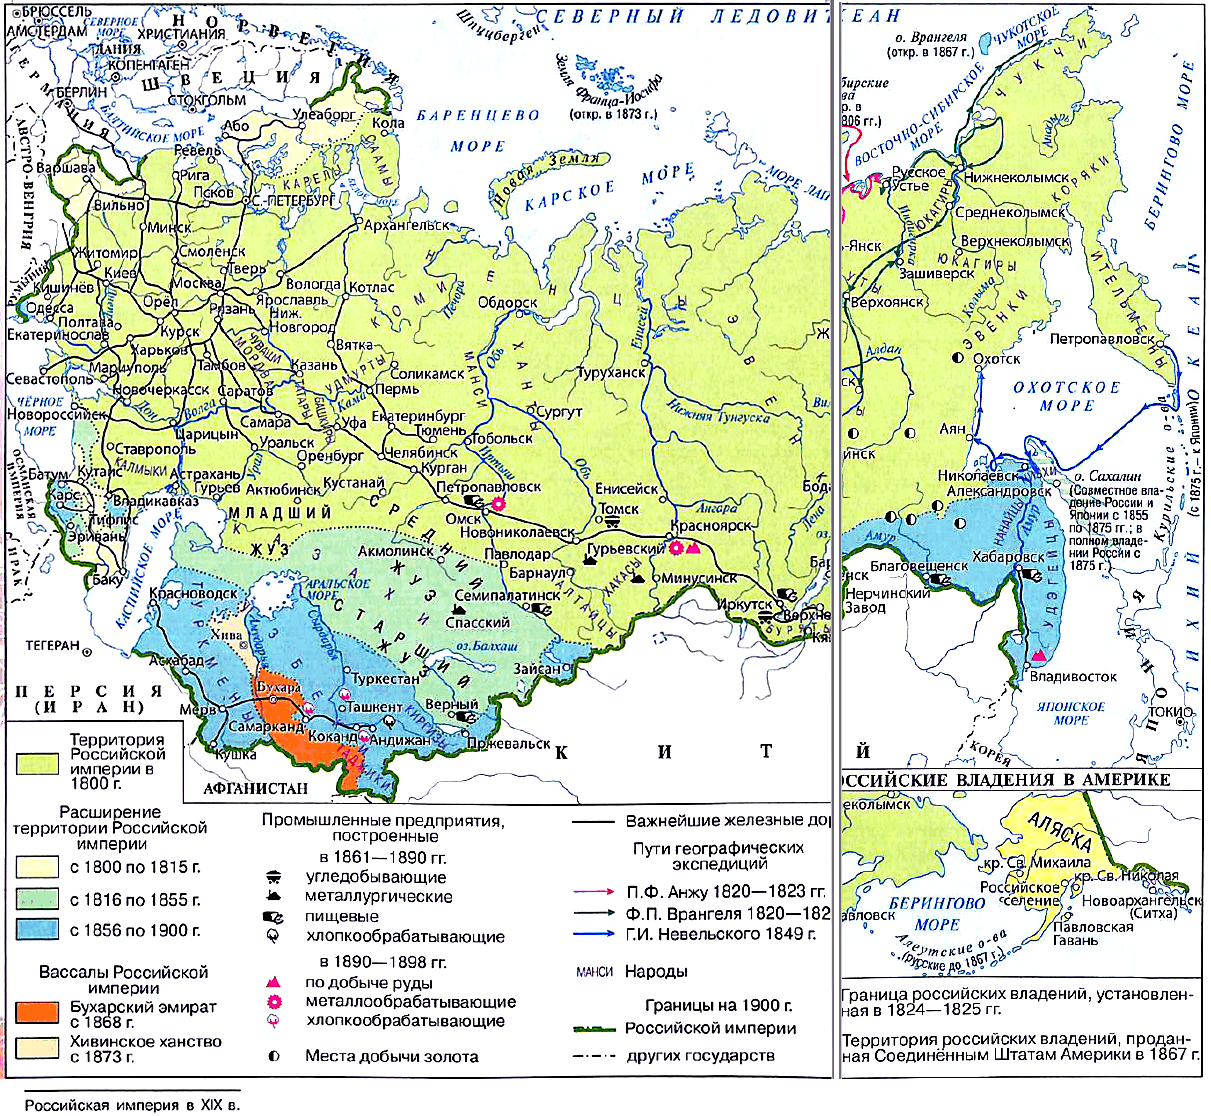 Российская империя в XIX в.